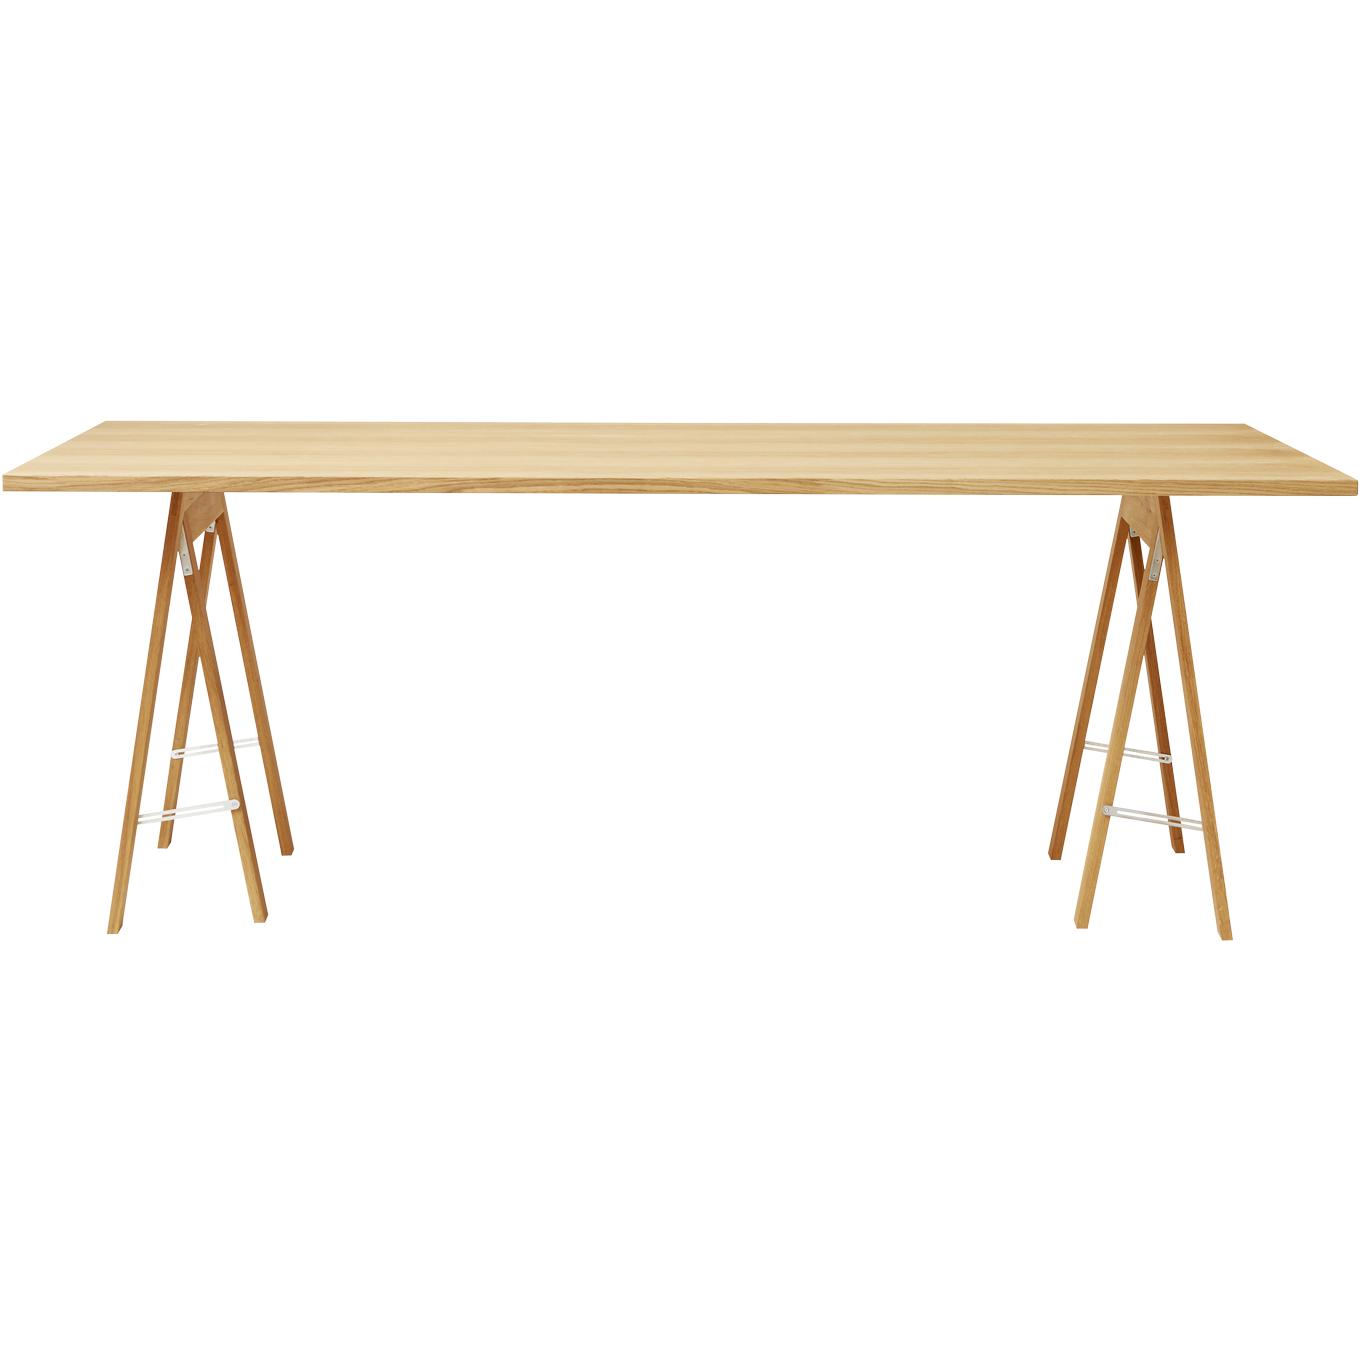 Form&Refine Linjär Tischplatte 205x88 cm, Eiche